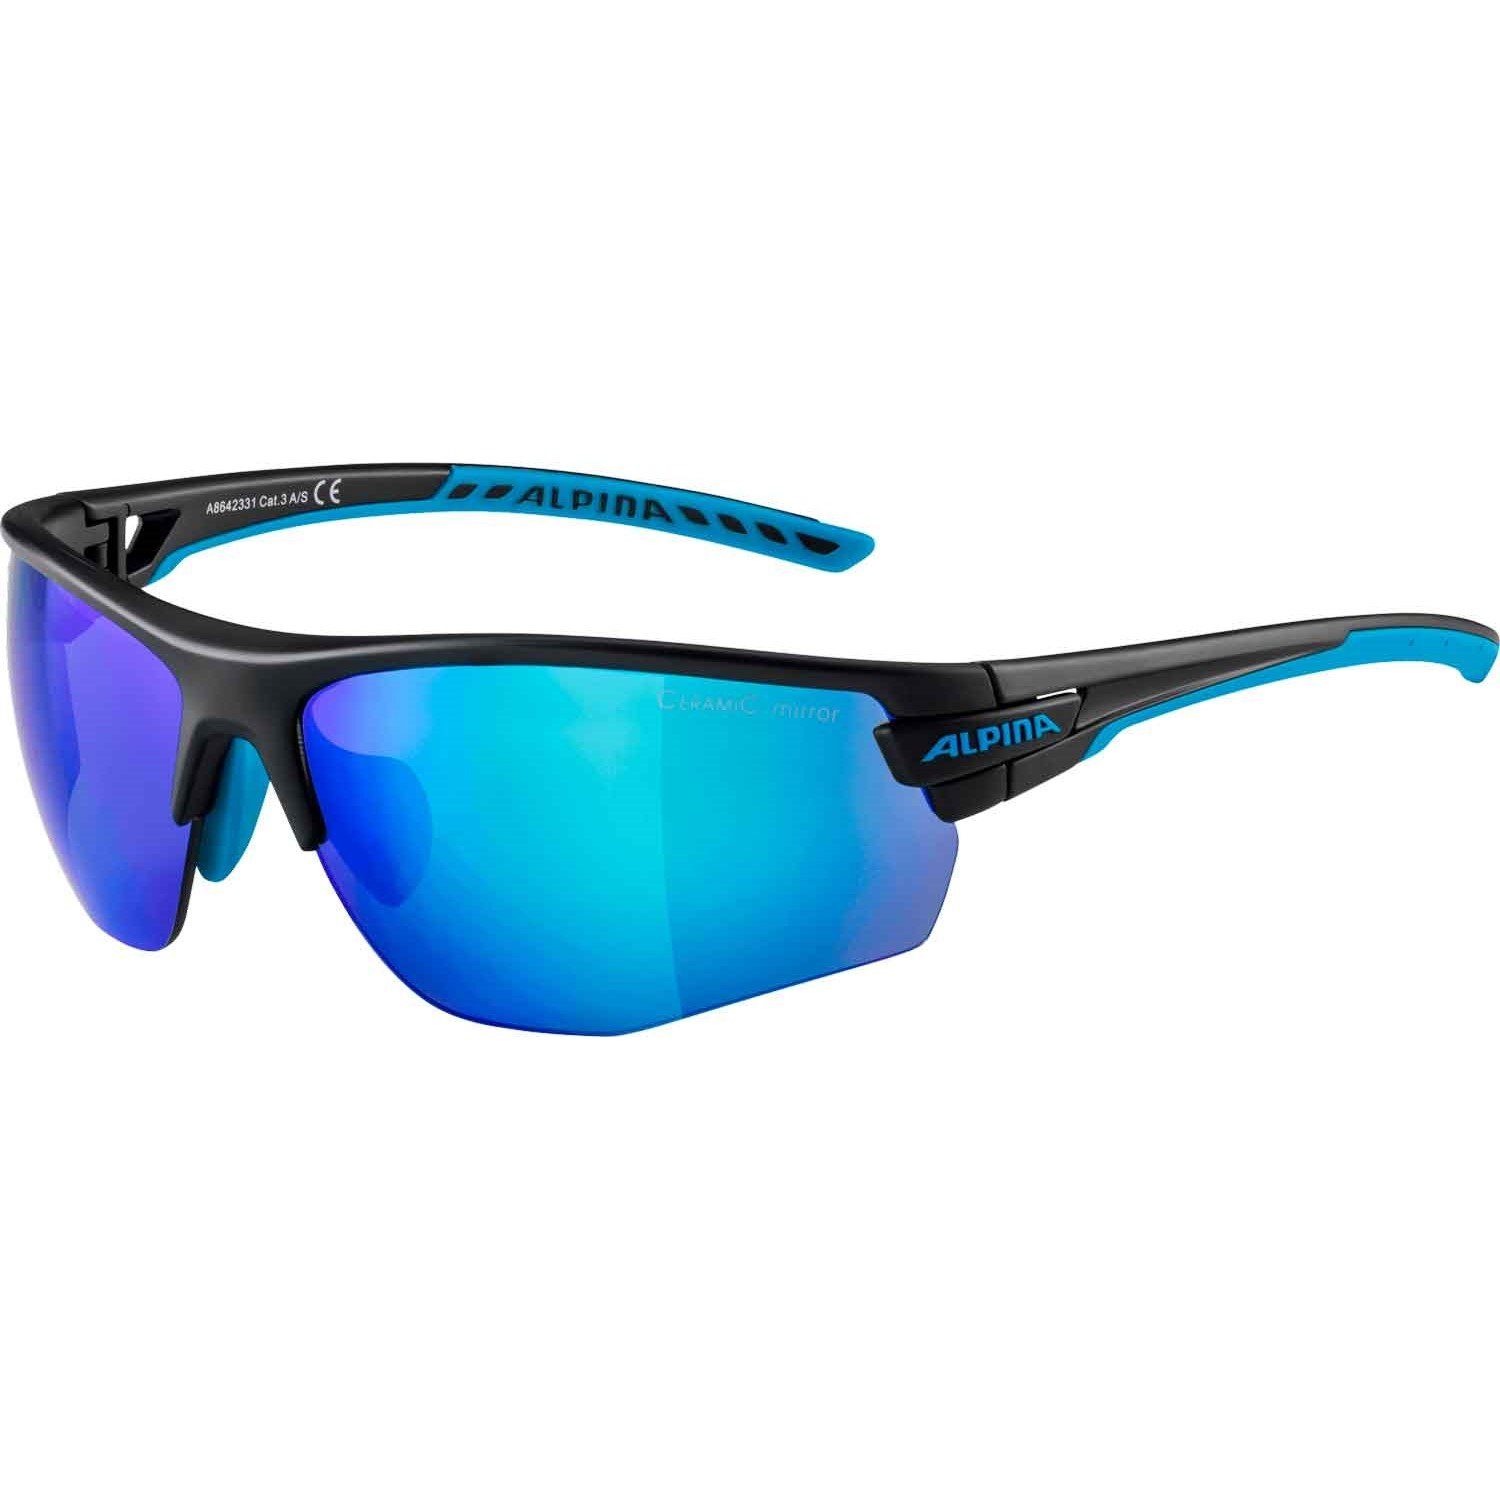 TRI-Scray Herren Sonnenbrille Sports Alpina Sportbrille Blau HR 2.0